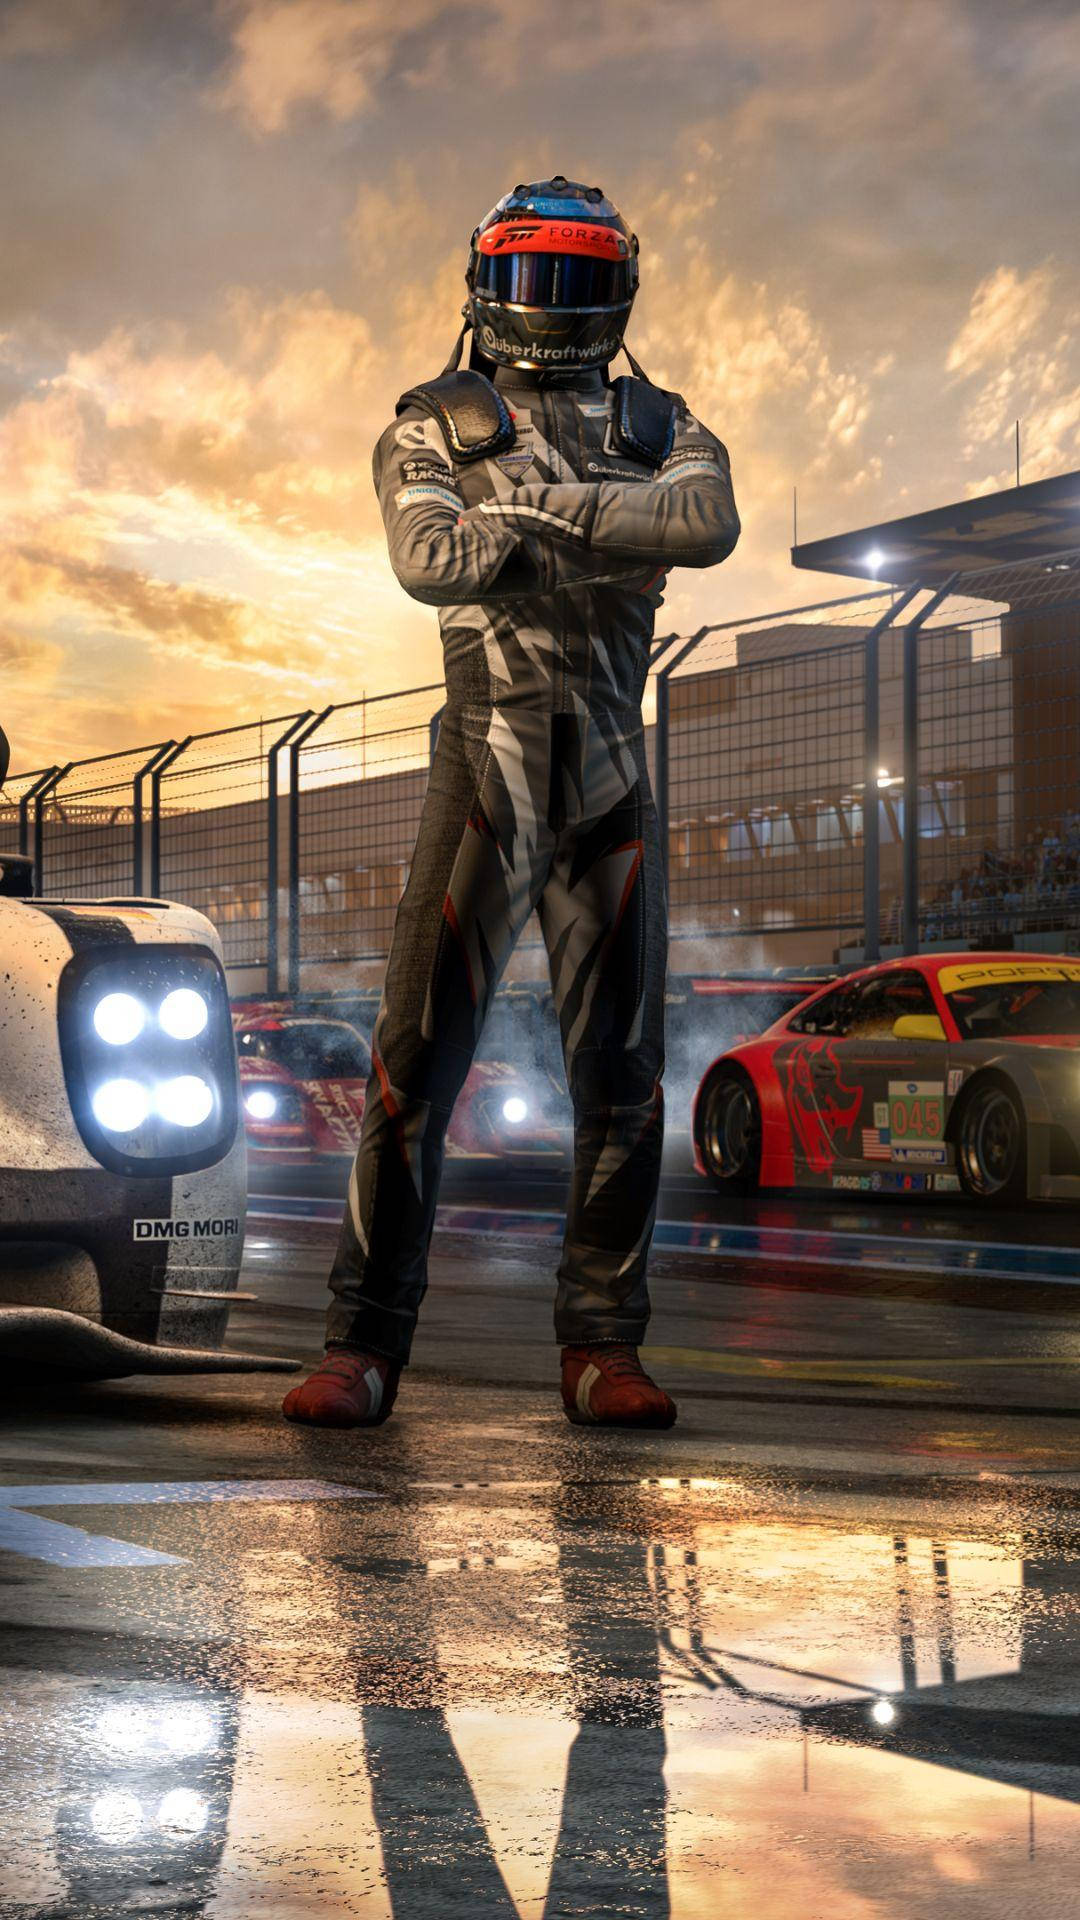 Forza 7 Racing Suit Wallpaper